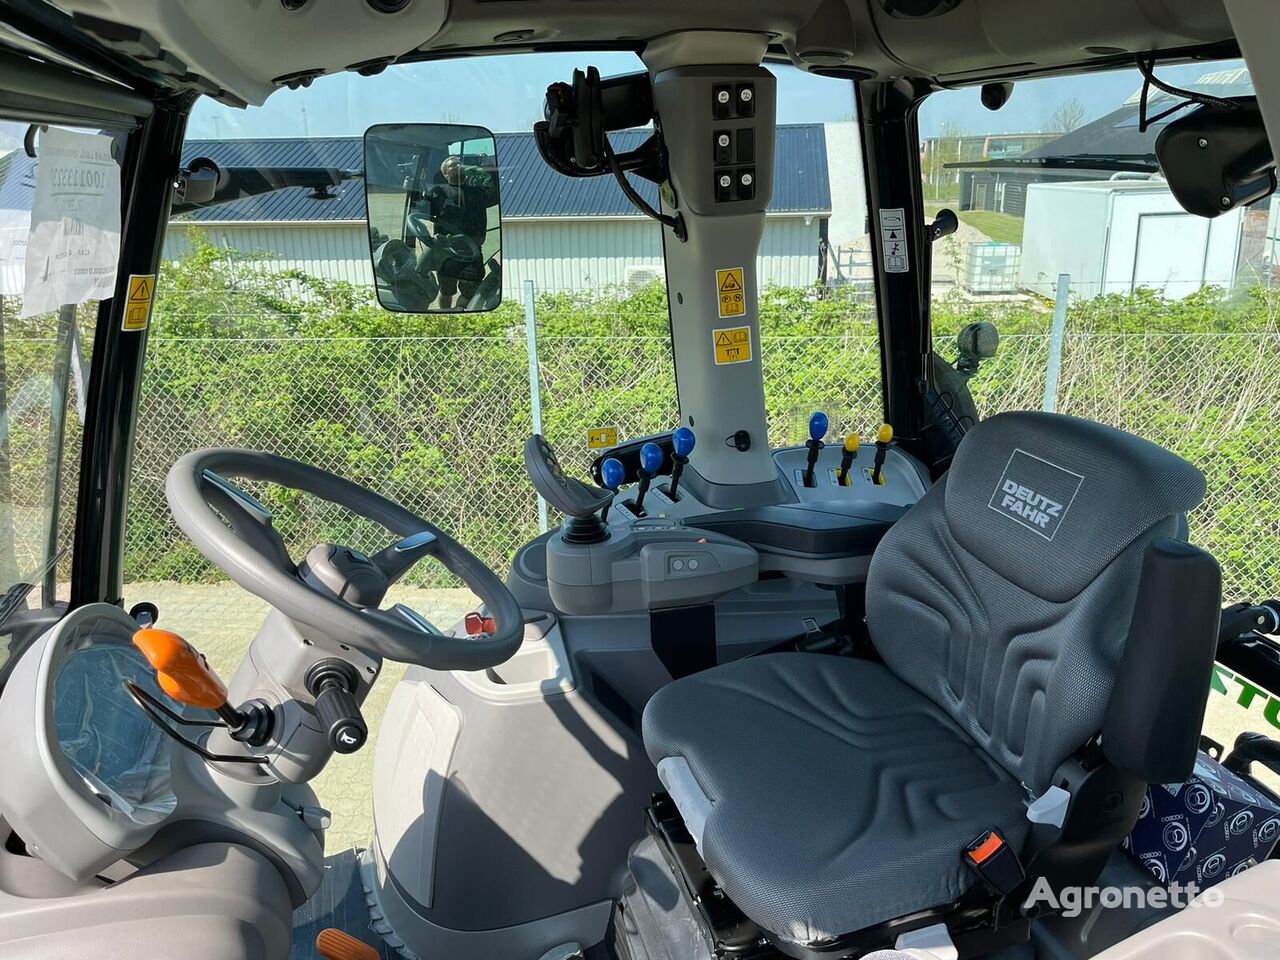 Deutz-Fahr Agrotron 6145G tractor de ruedas nuevo